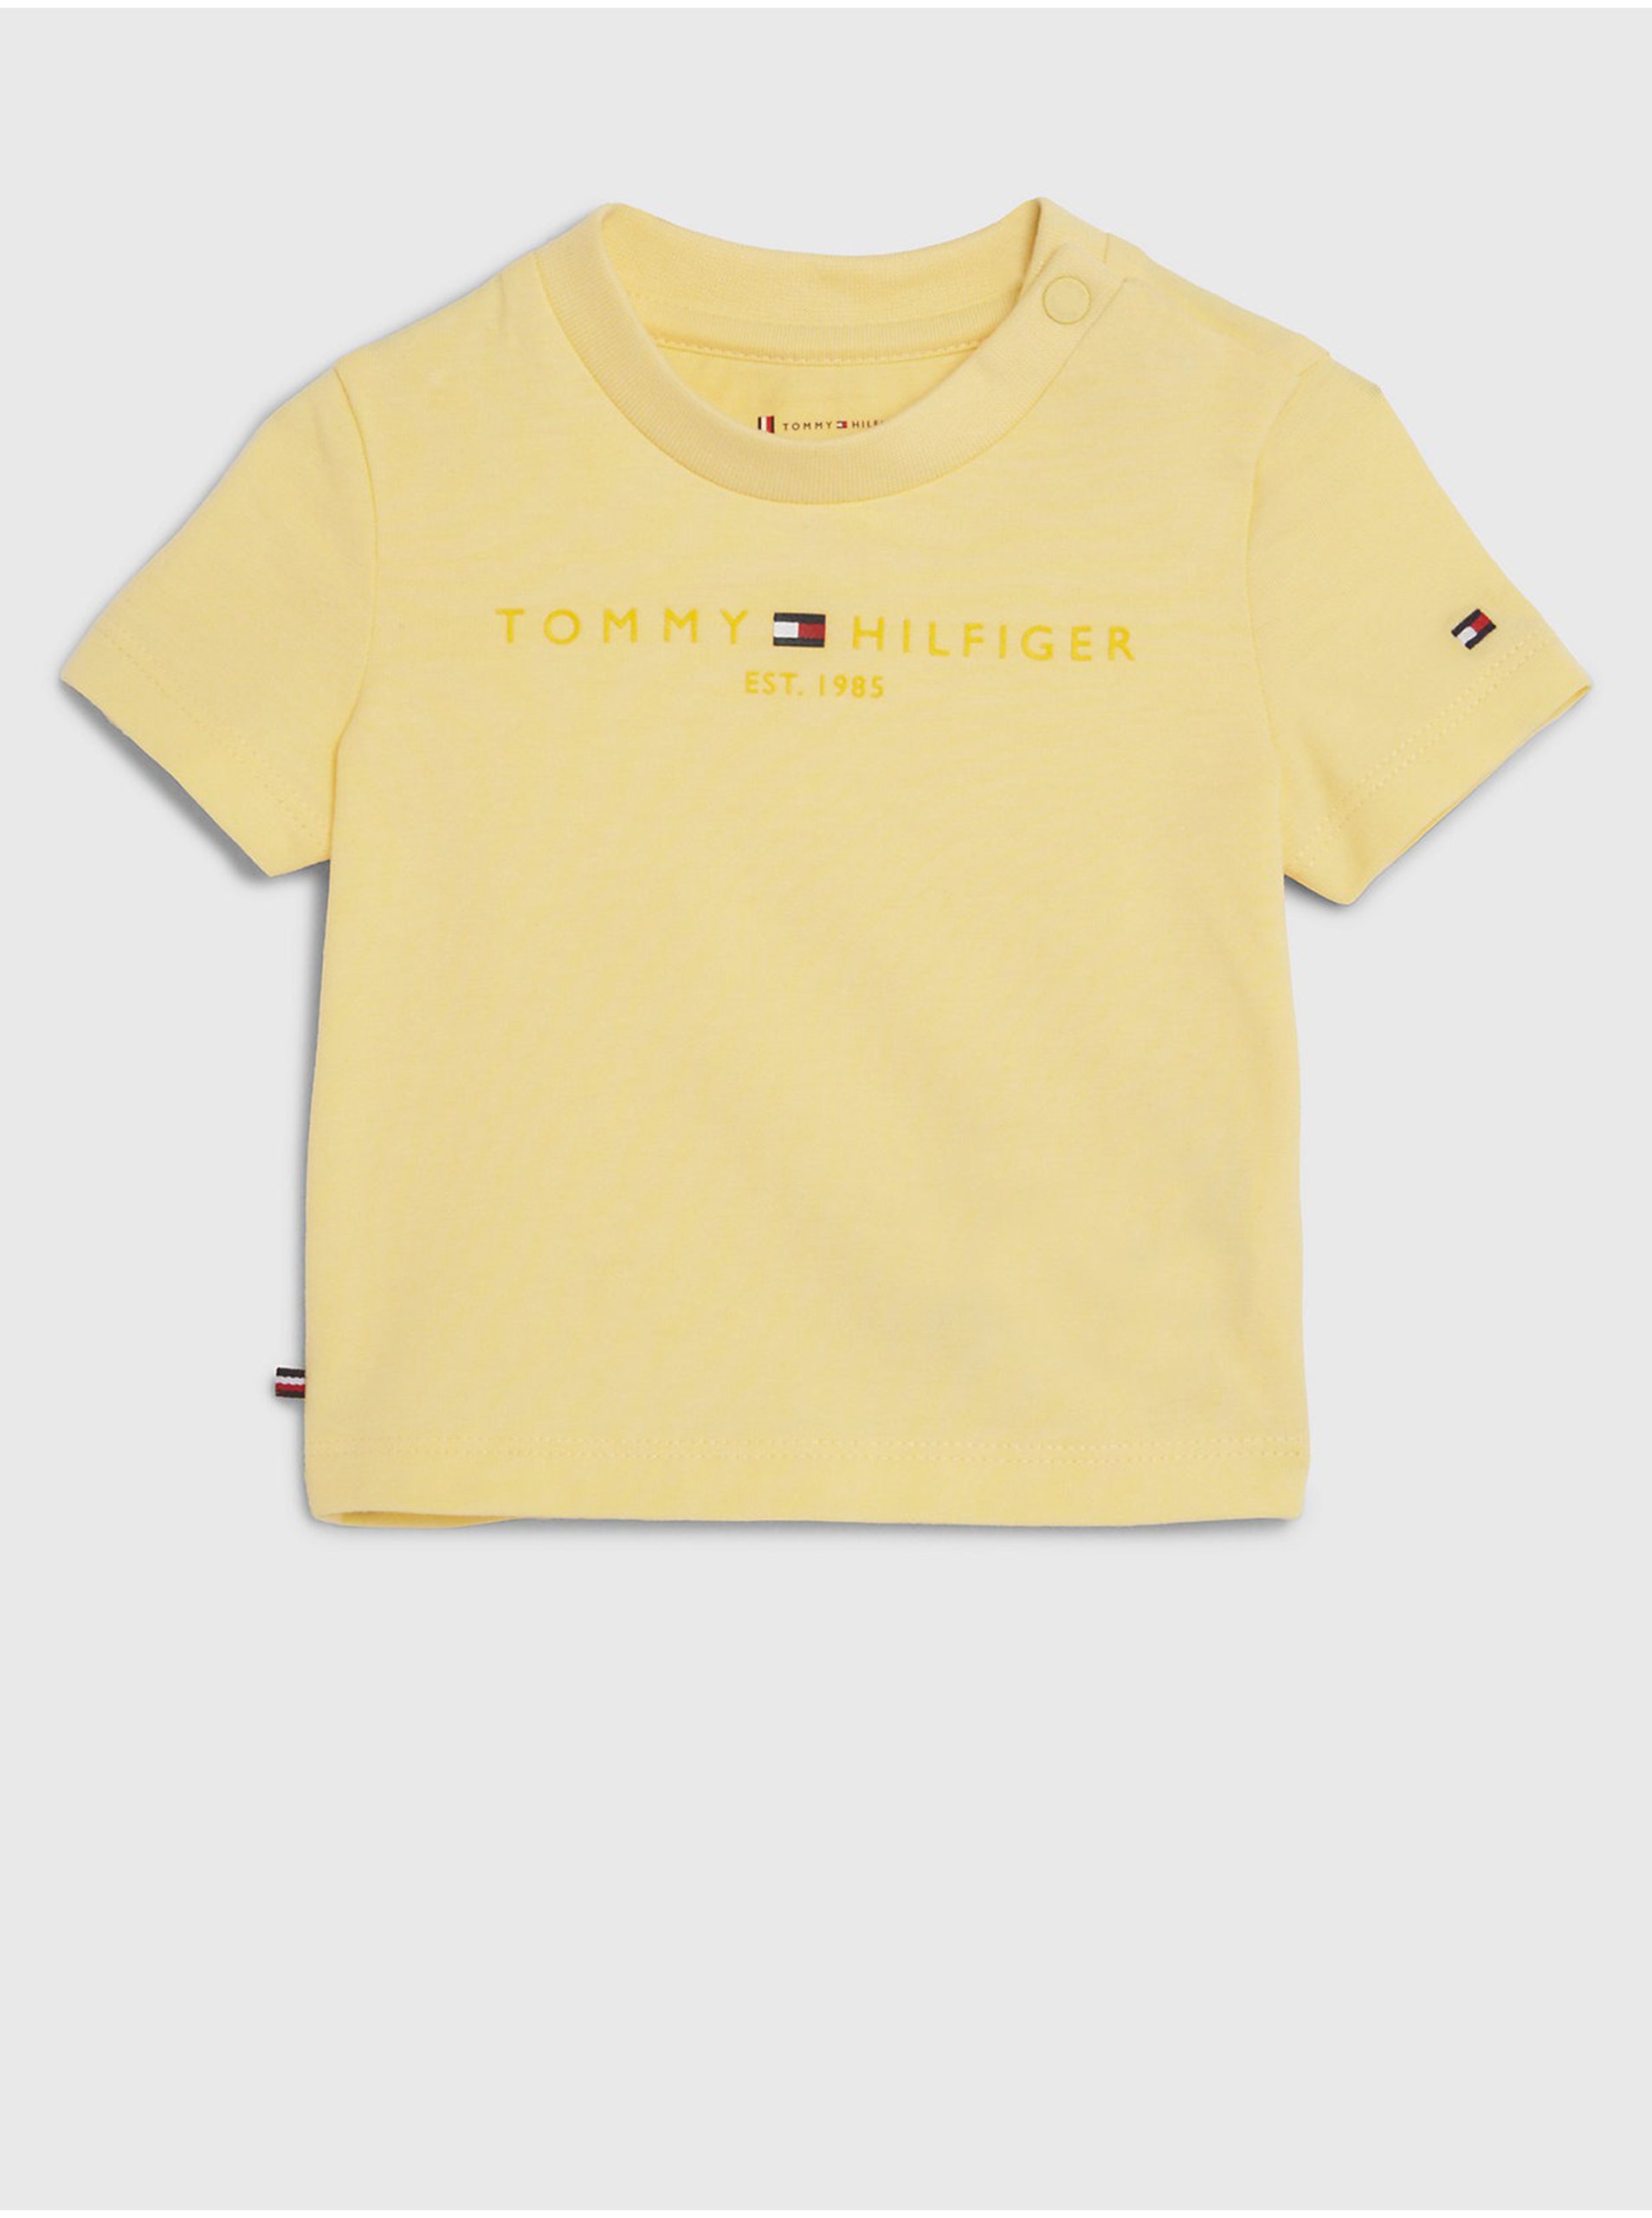 Lacno Žlté detské tričko Tommy Hilfiger Baby Essential